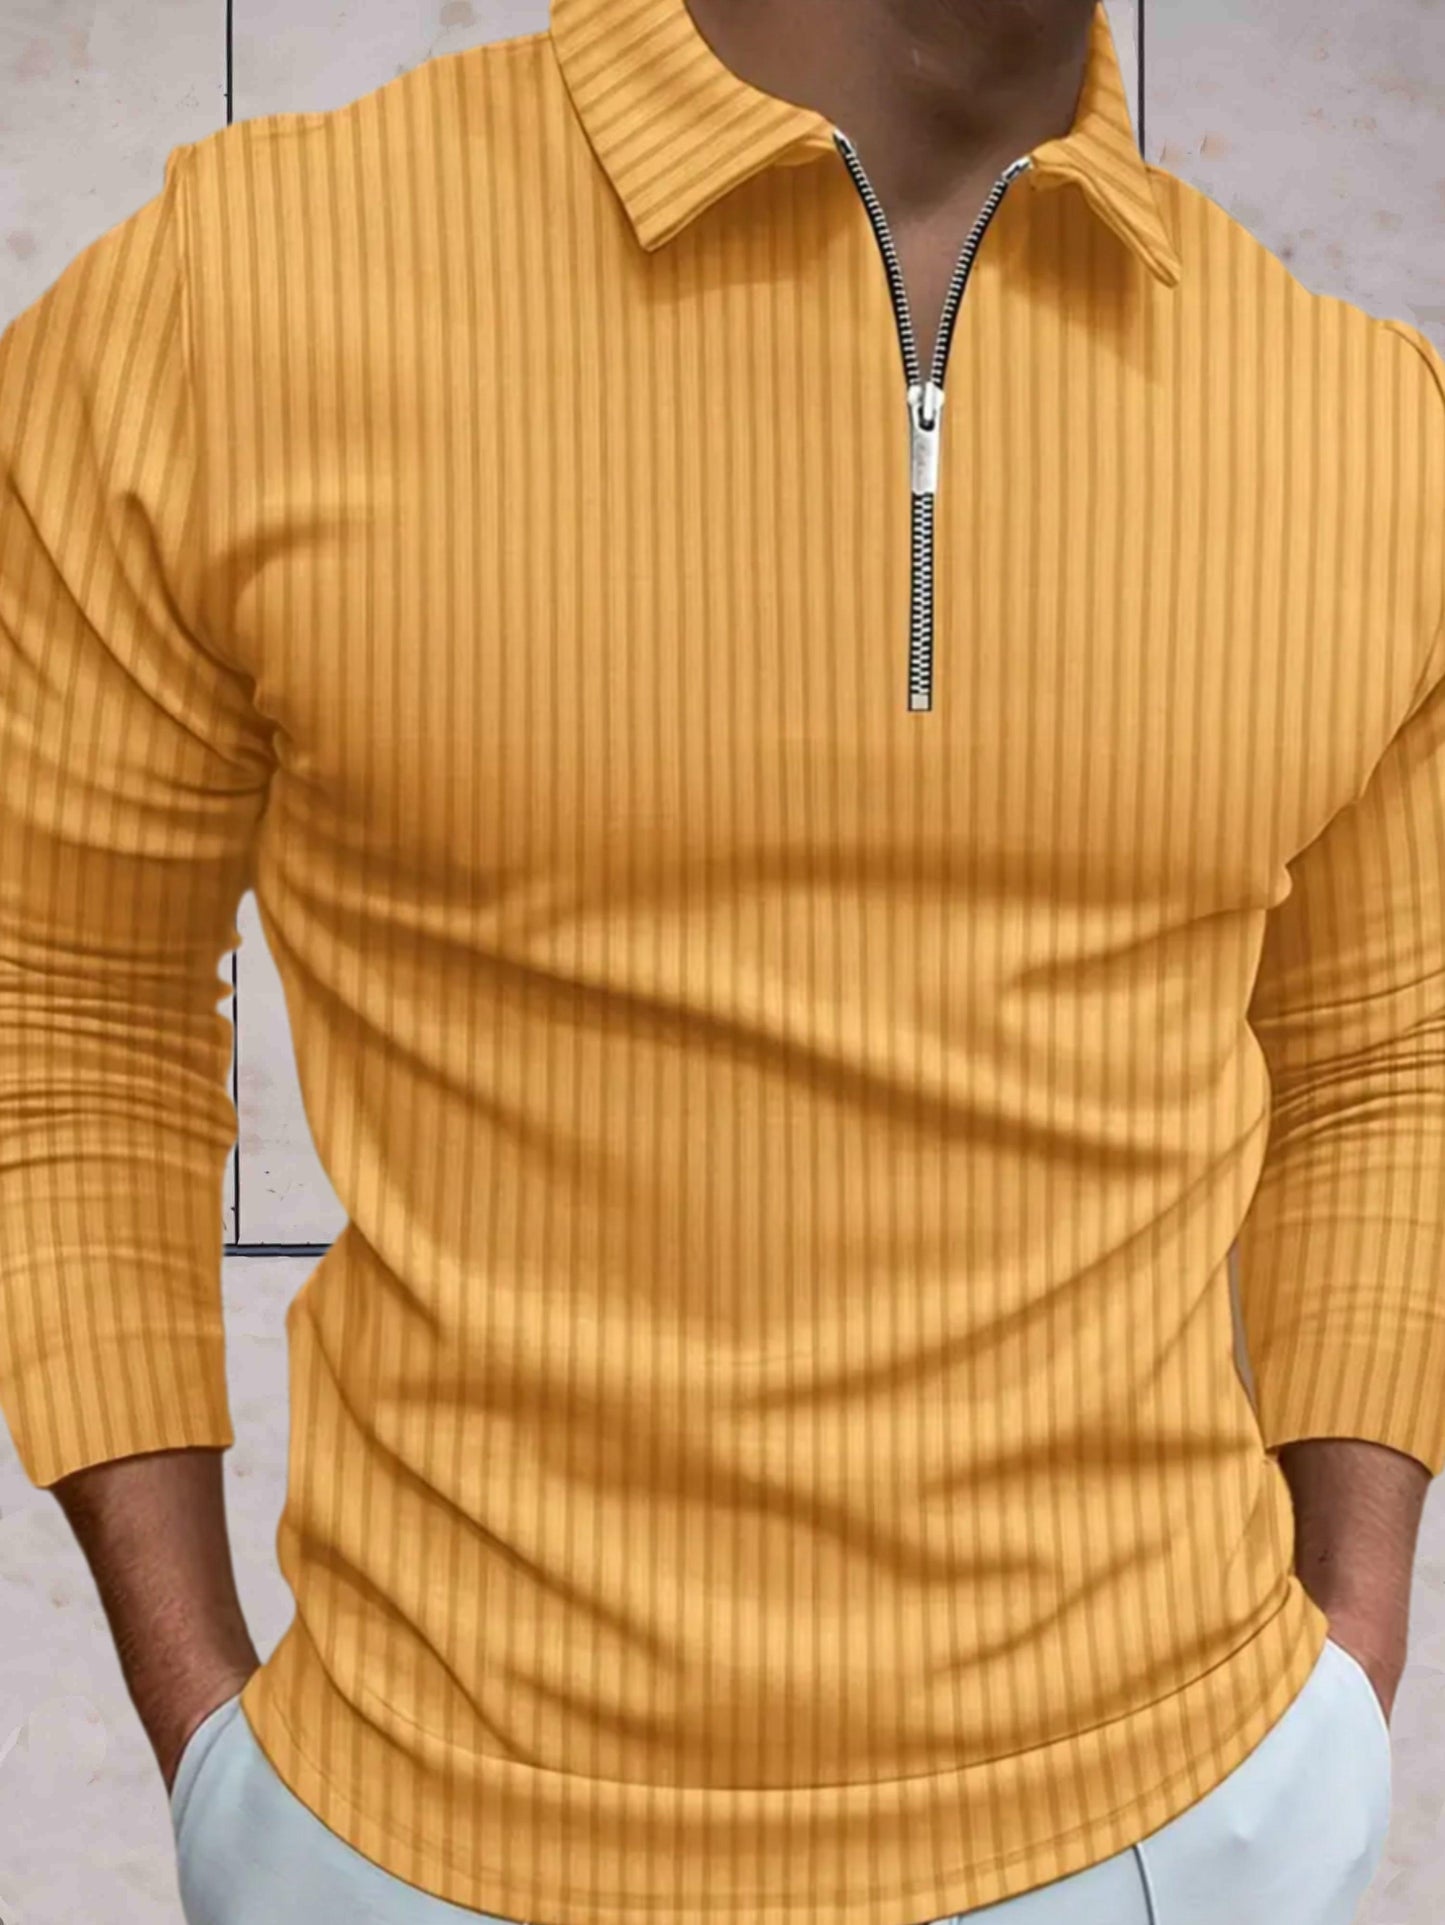 James - Winter warme sweater zipper kraag comfortabel in meerdere kleuren - Sky-Sense